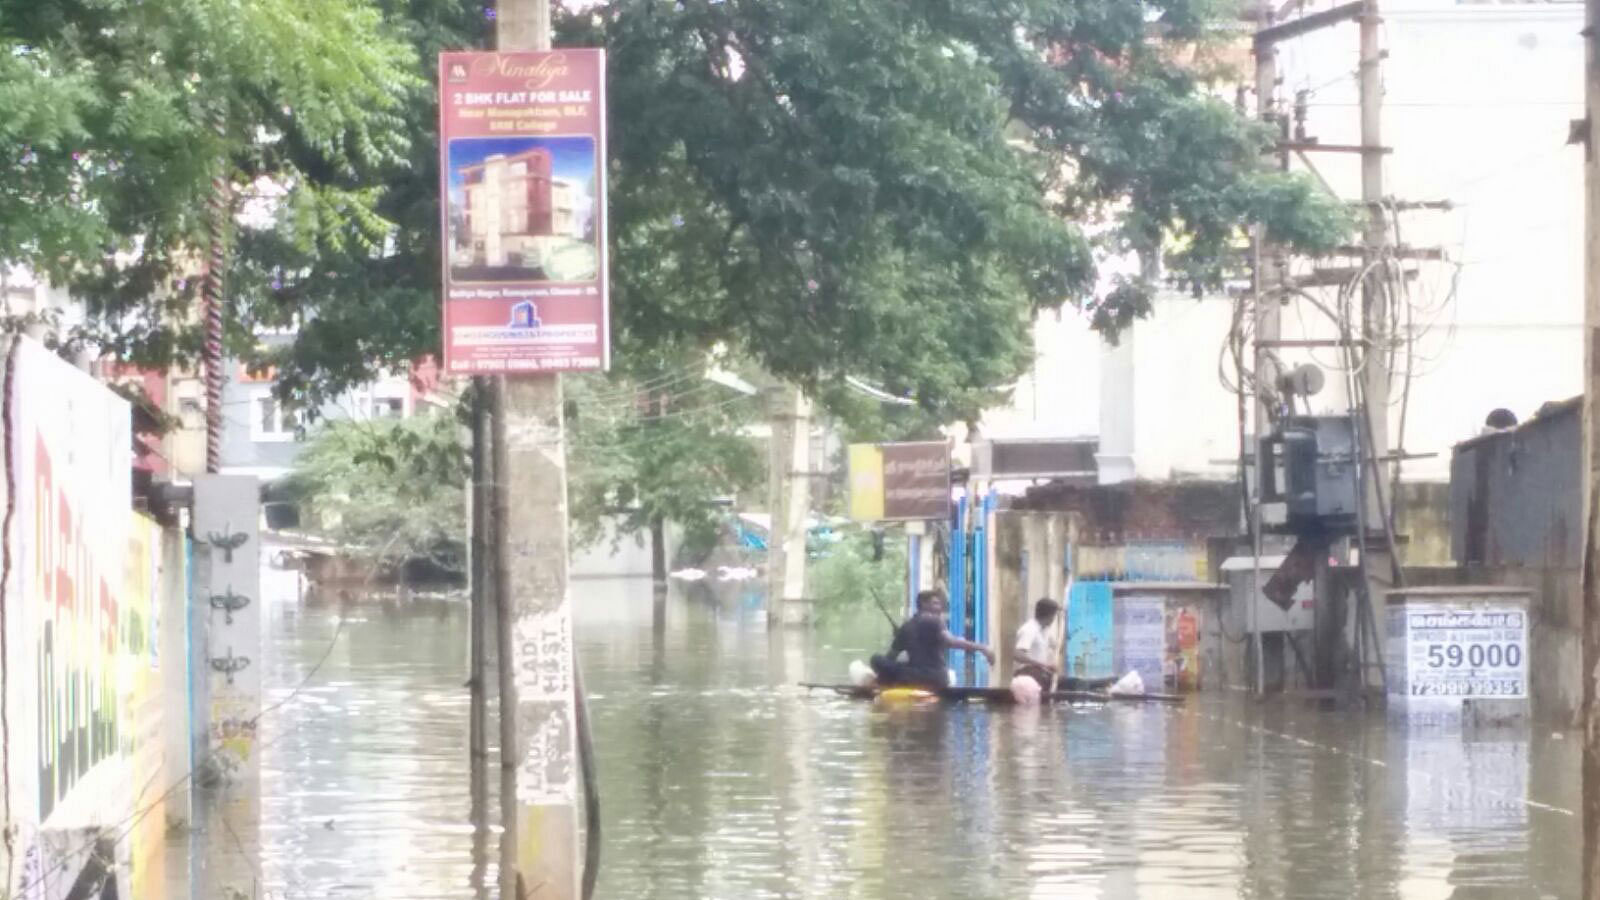  A flooded street in Chennai. (Photo: Adhiraj Singh Samyal)